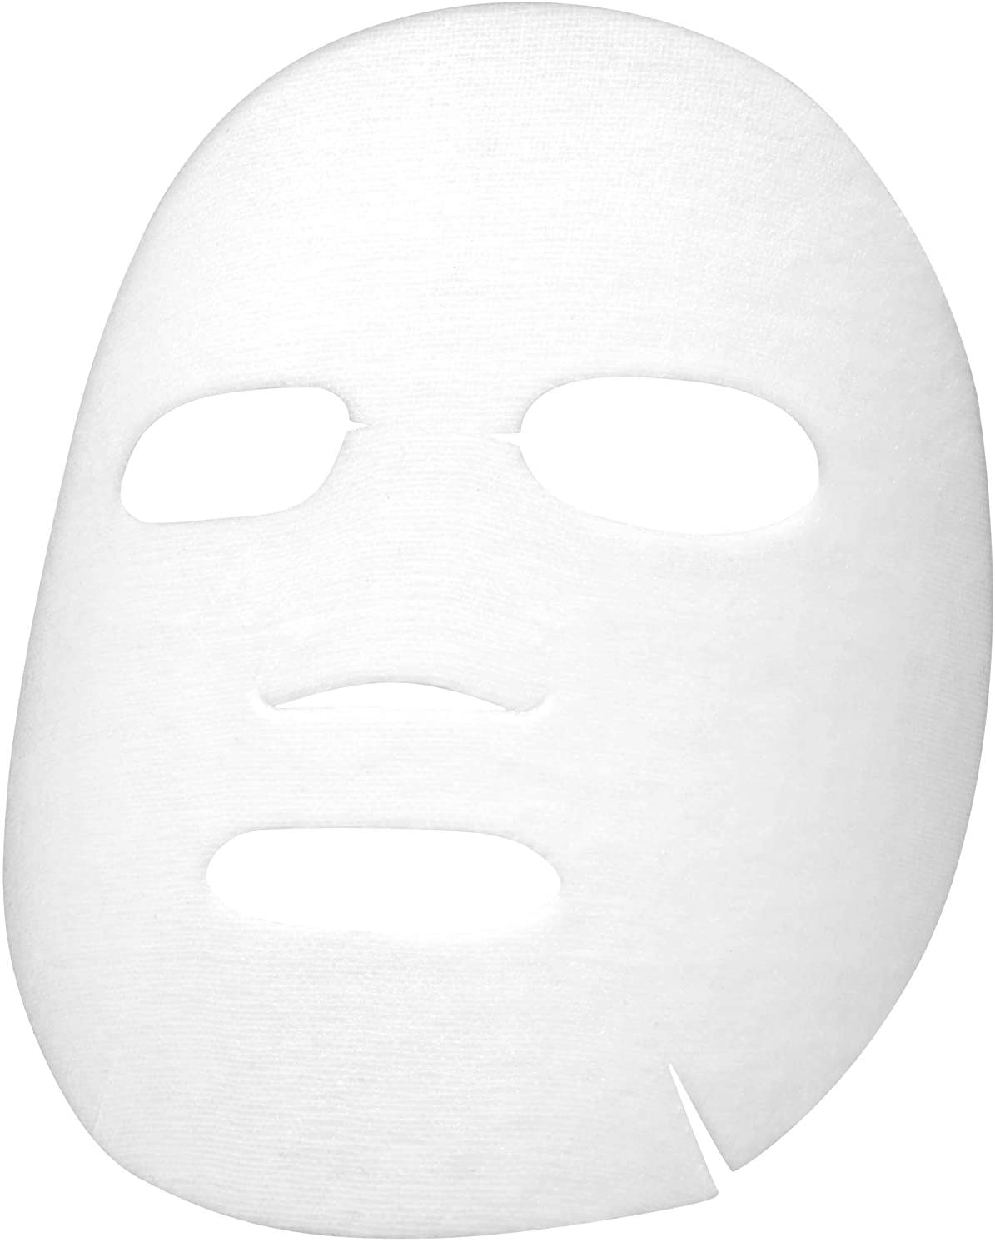 VT(ブイティー) プロシカマスクの商品画像サムネ4 